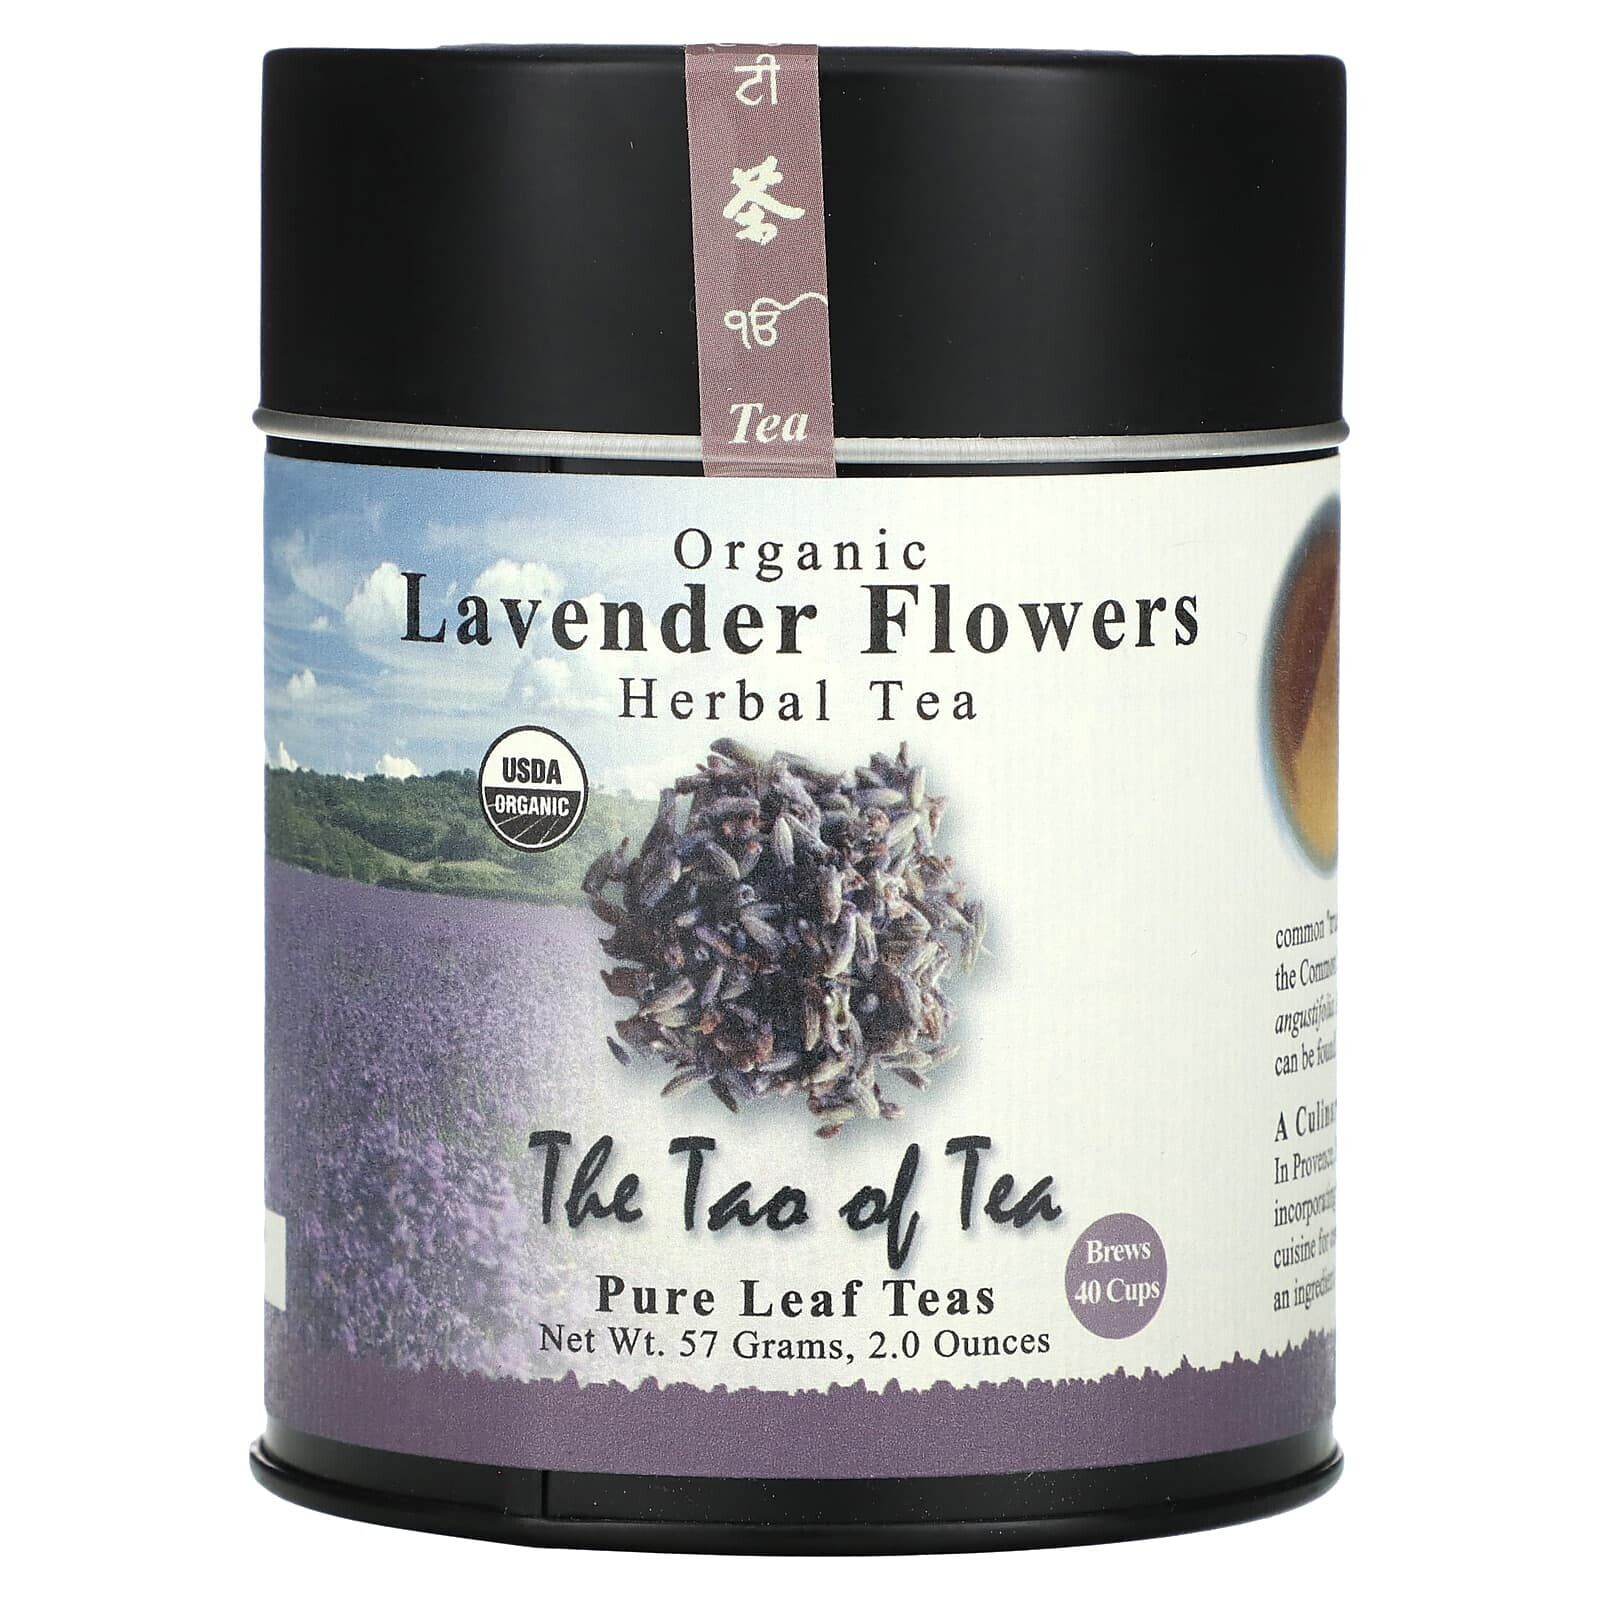 The Tao of Tea, Органический травяной чай, перечная мята, 2 унции (57 г)